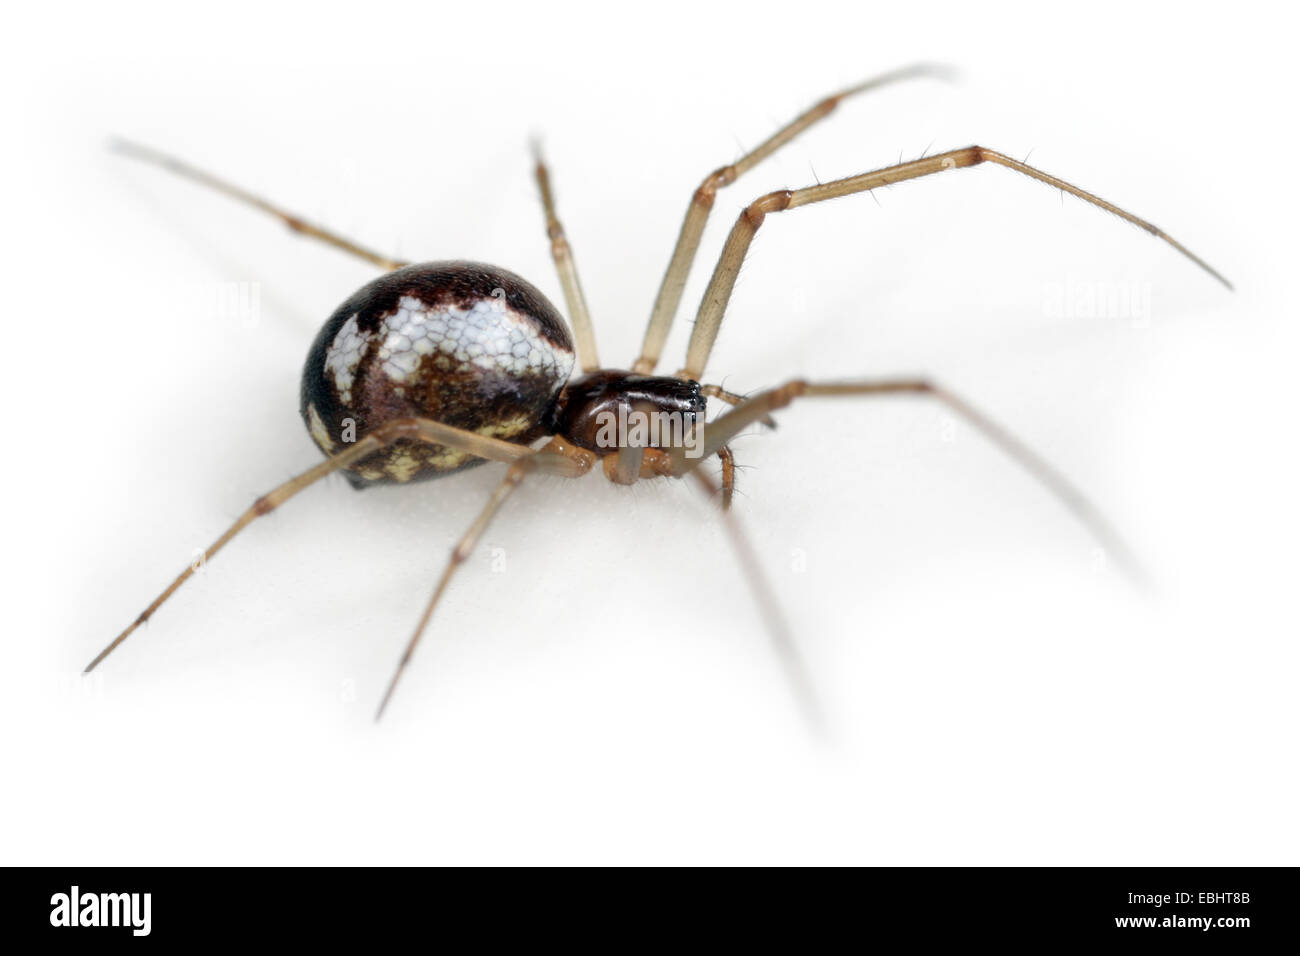 Femme Neriene peltata araignée sur fond blanc, de la famille des Amphinectidae, Sheetweb weavers. Banque D'Images